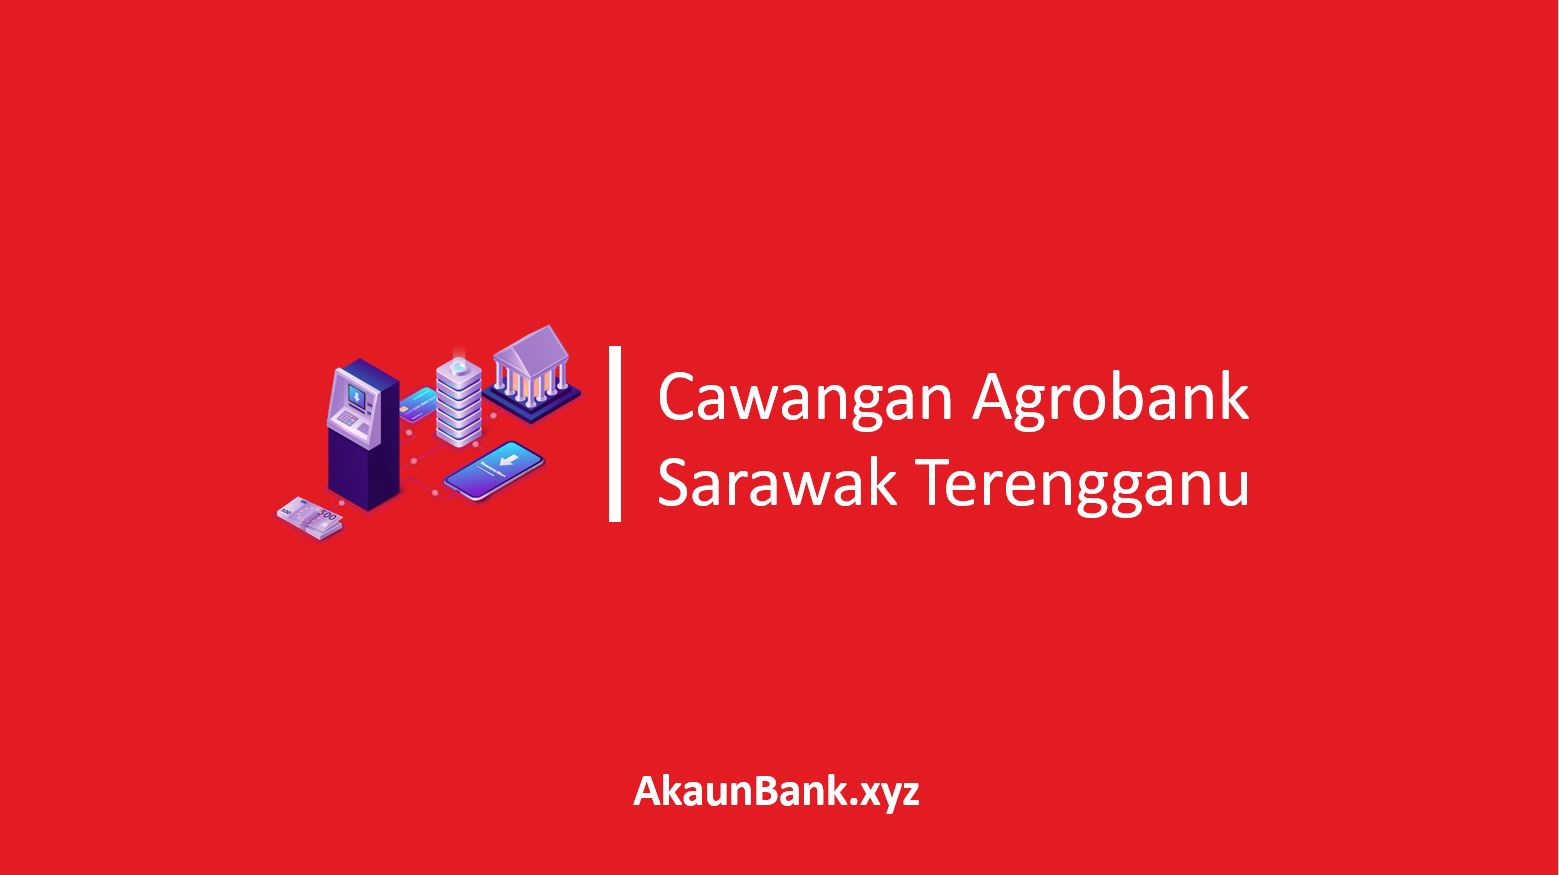 Cawangan Agrobank Sarawak Terengganu